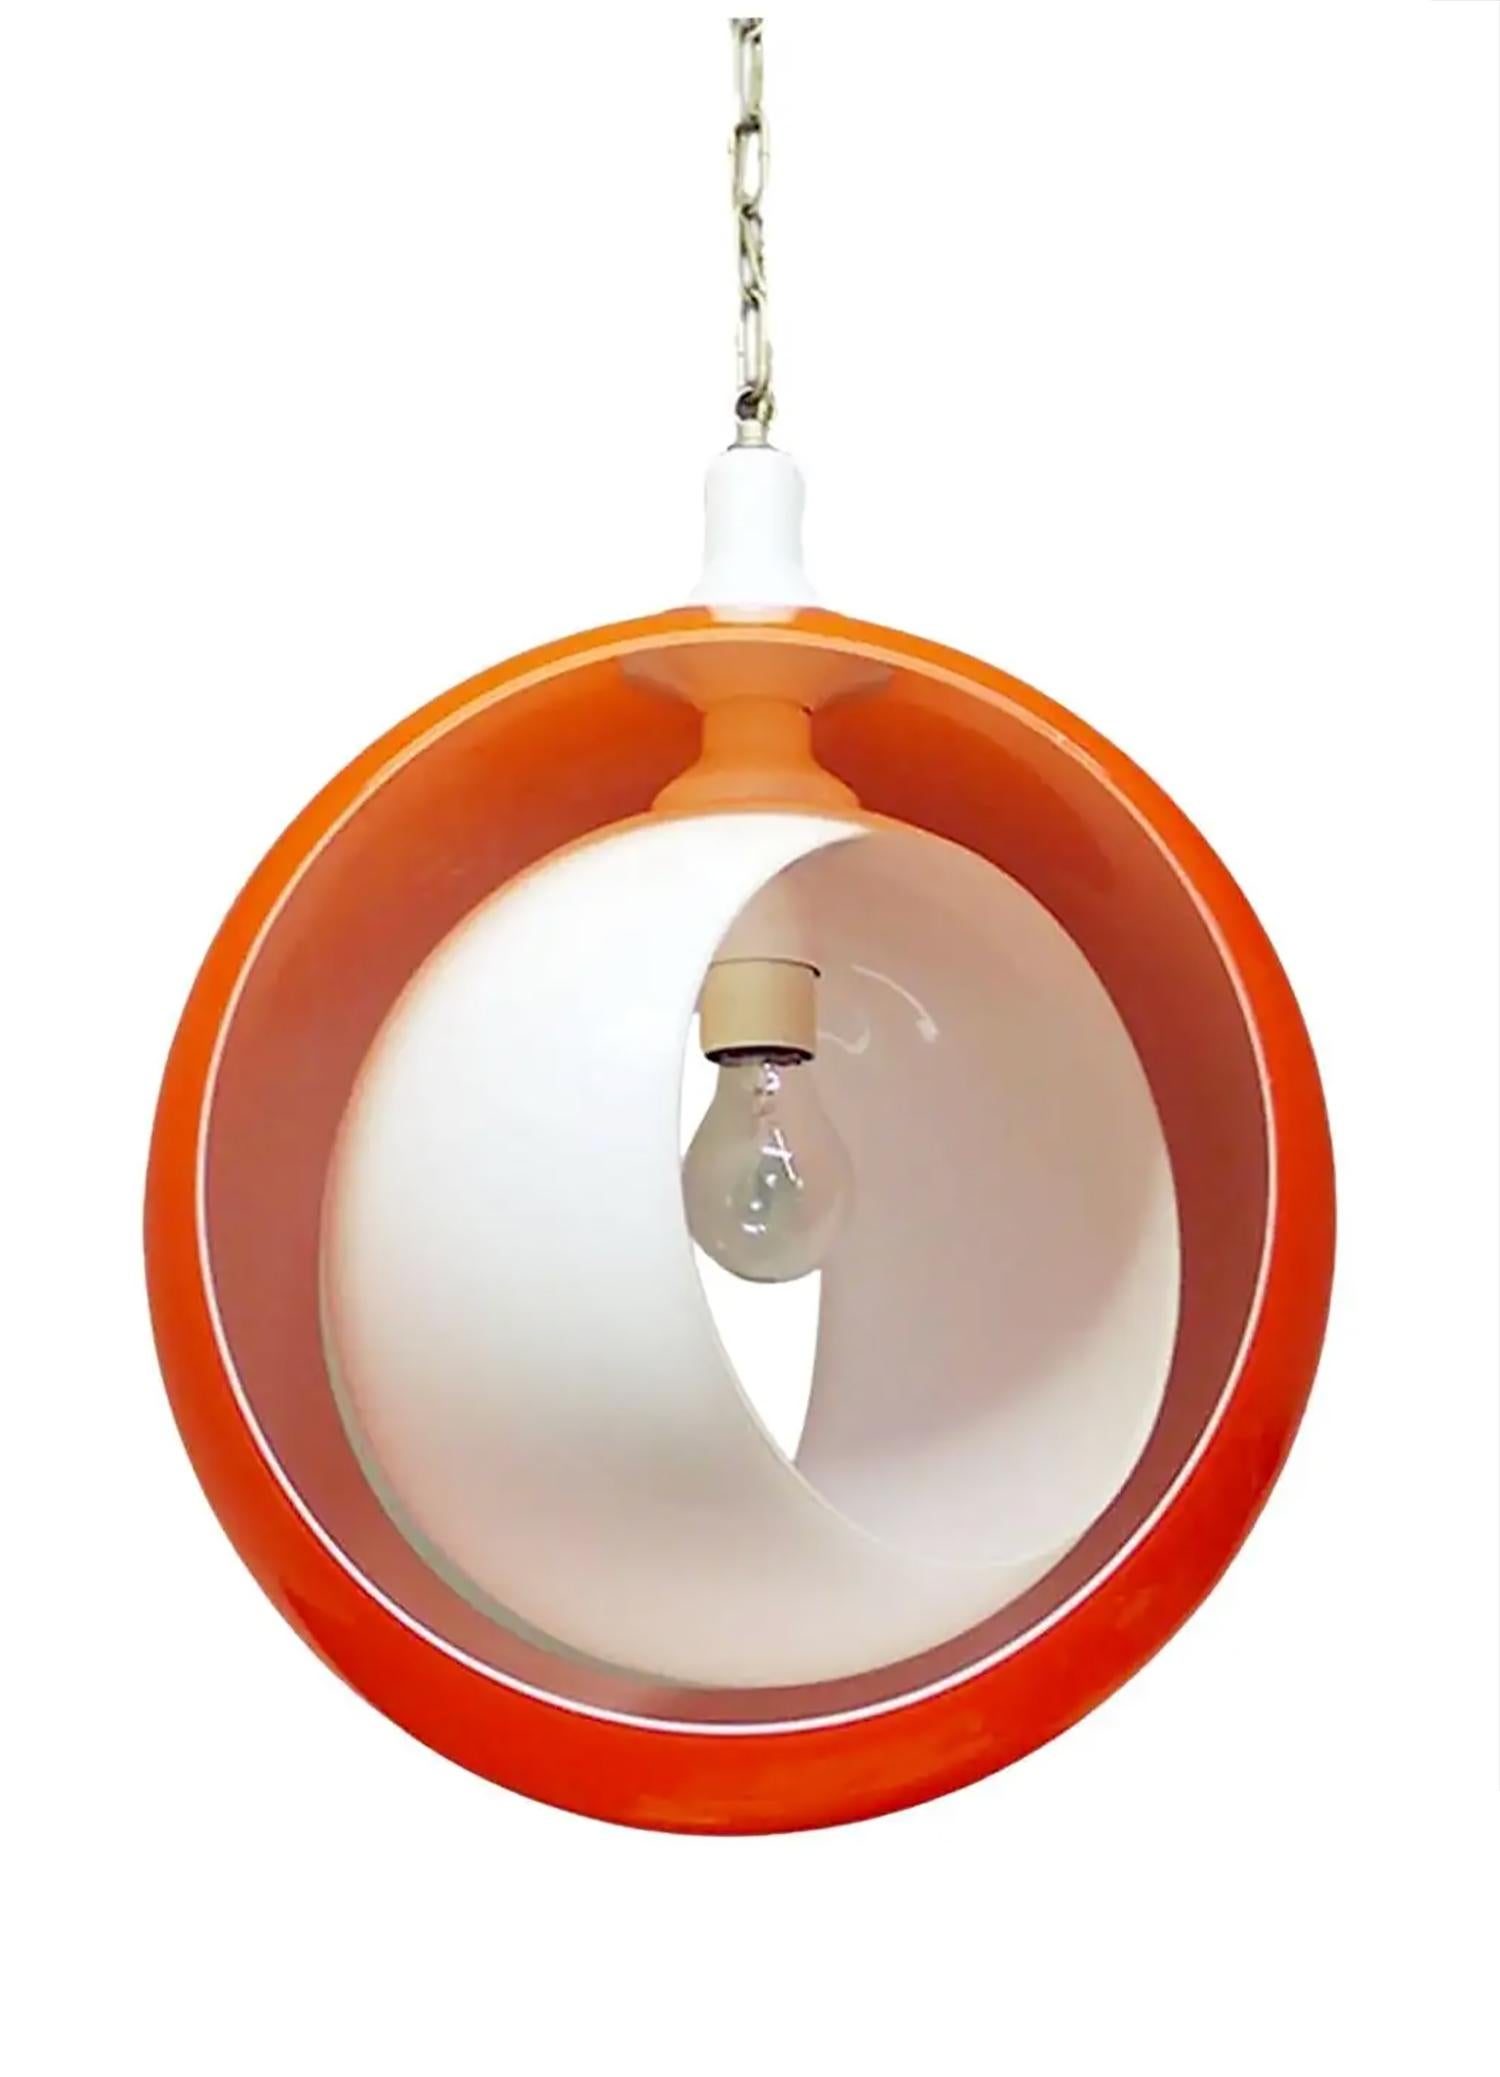 Elegante lampe suspendue à phases de lune en verre de Murano, avec un globe en verre orange et une partie mobile en verre opalin blanc. L'anneau intérieur en verre blanc est orientable pour une lumière indirecte. Le lustre éclaire magnifiquement et